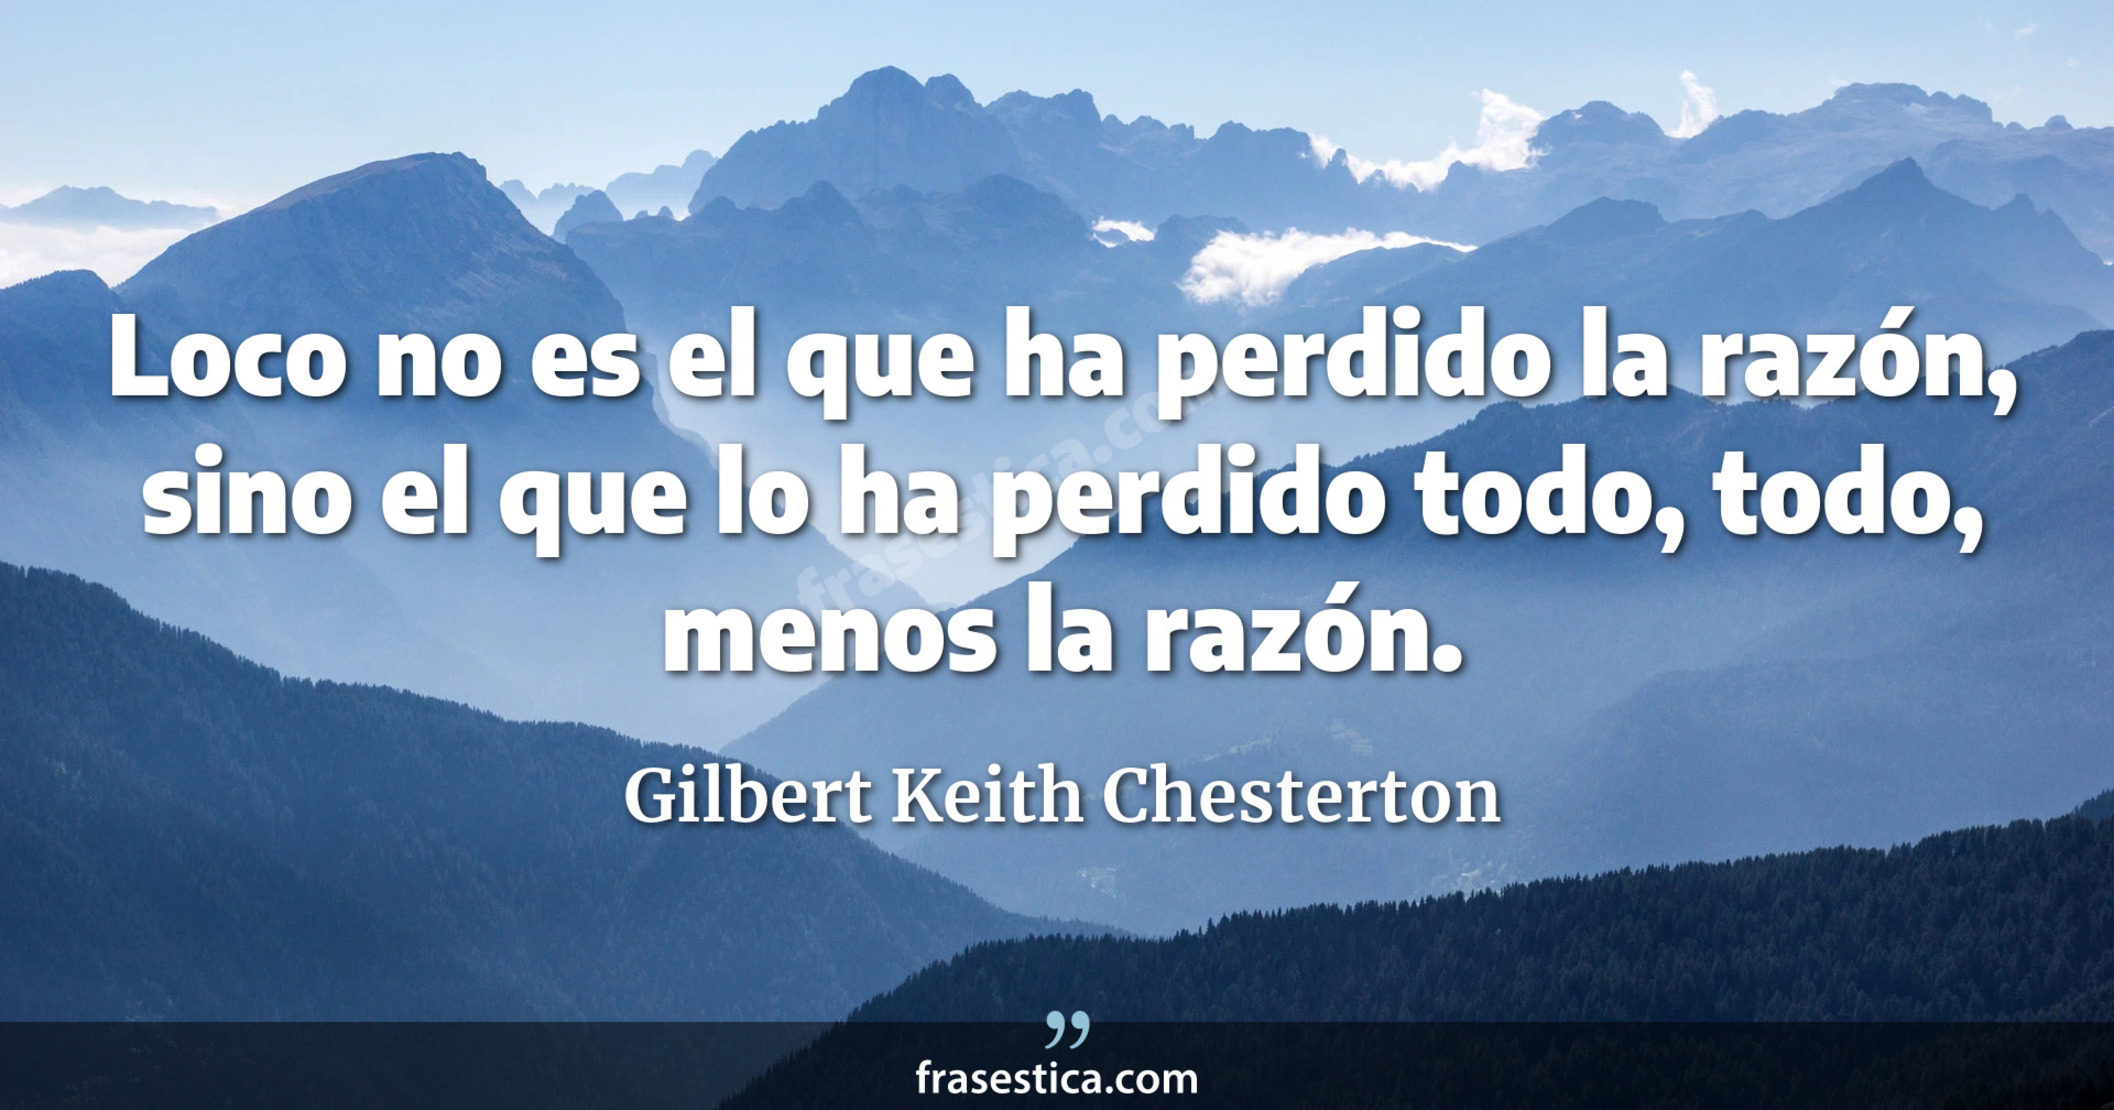 Loco no es el que ha perdido la razón, sino el que lo ha perdido todo, todo, menos la razón. - Gilbert Keith Chesterton